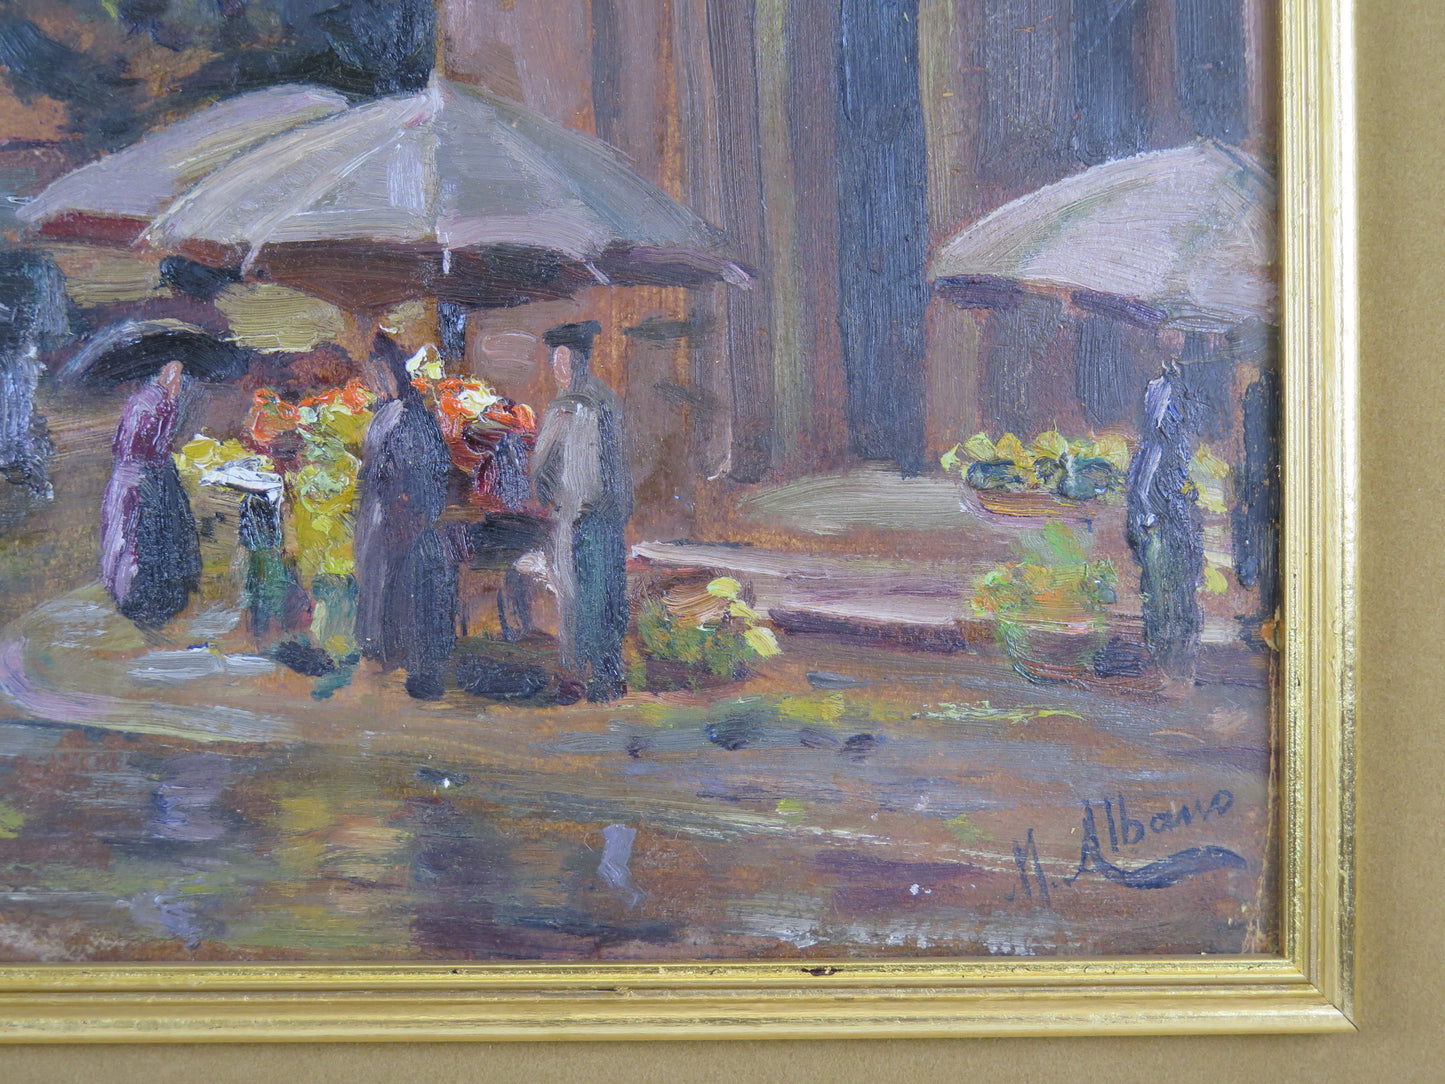 Market Corso Valdocco In Turin Picture Oil Painter Mario Albano 1896-1968 Vs10